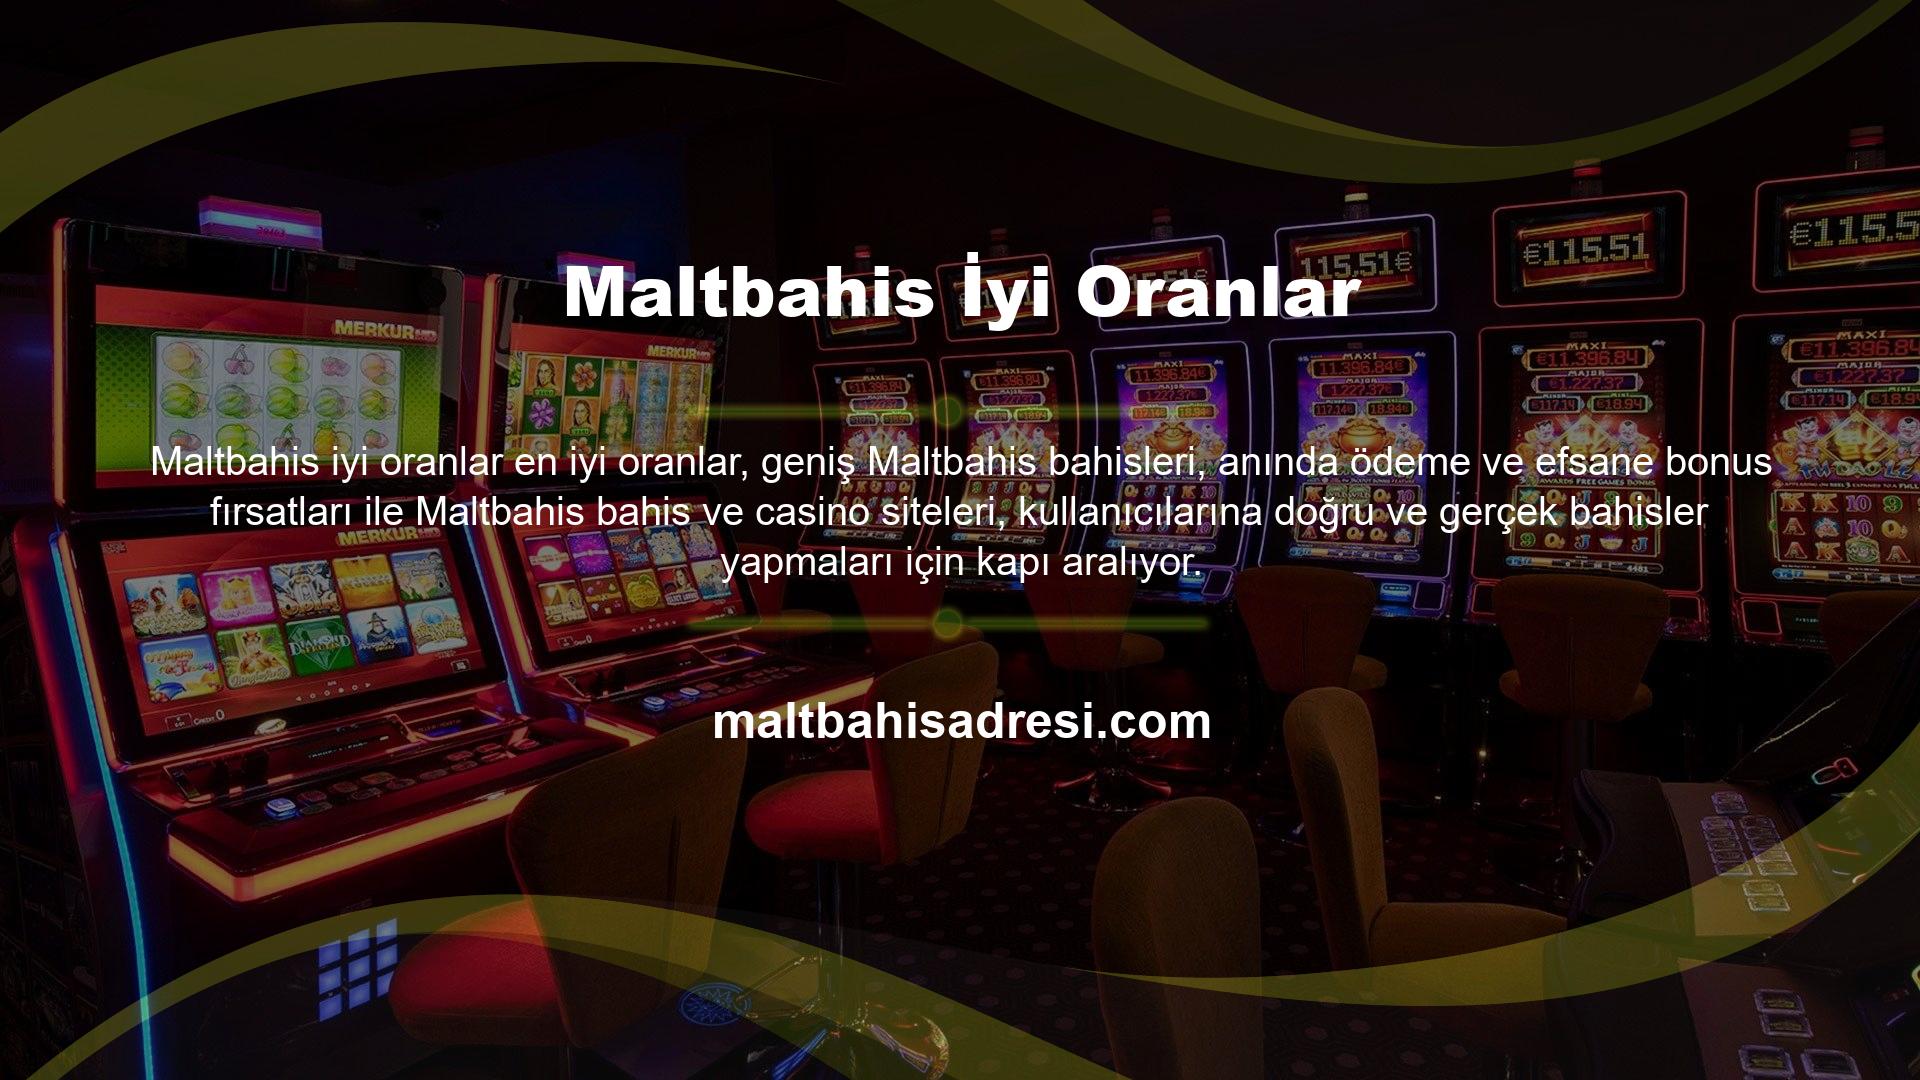 Diğer birçok bahis sitesinin aksine, Maltbahis Bahis ve Casino sitesi size daha yüksek bahislerle bahis yapma ve oynama fırsatı sunarken, aynı zamanda çok sayıda bonus ve promosyon sunmaktadır